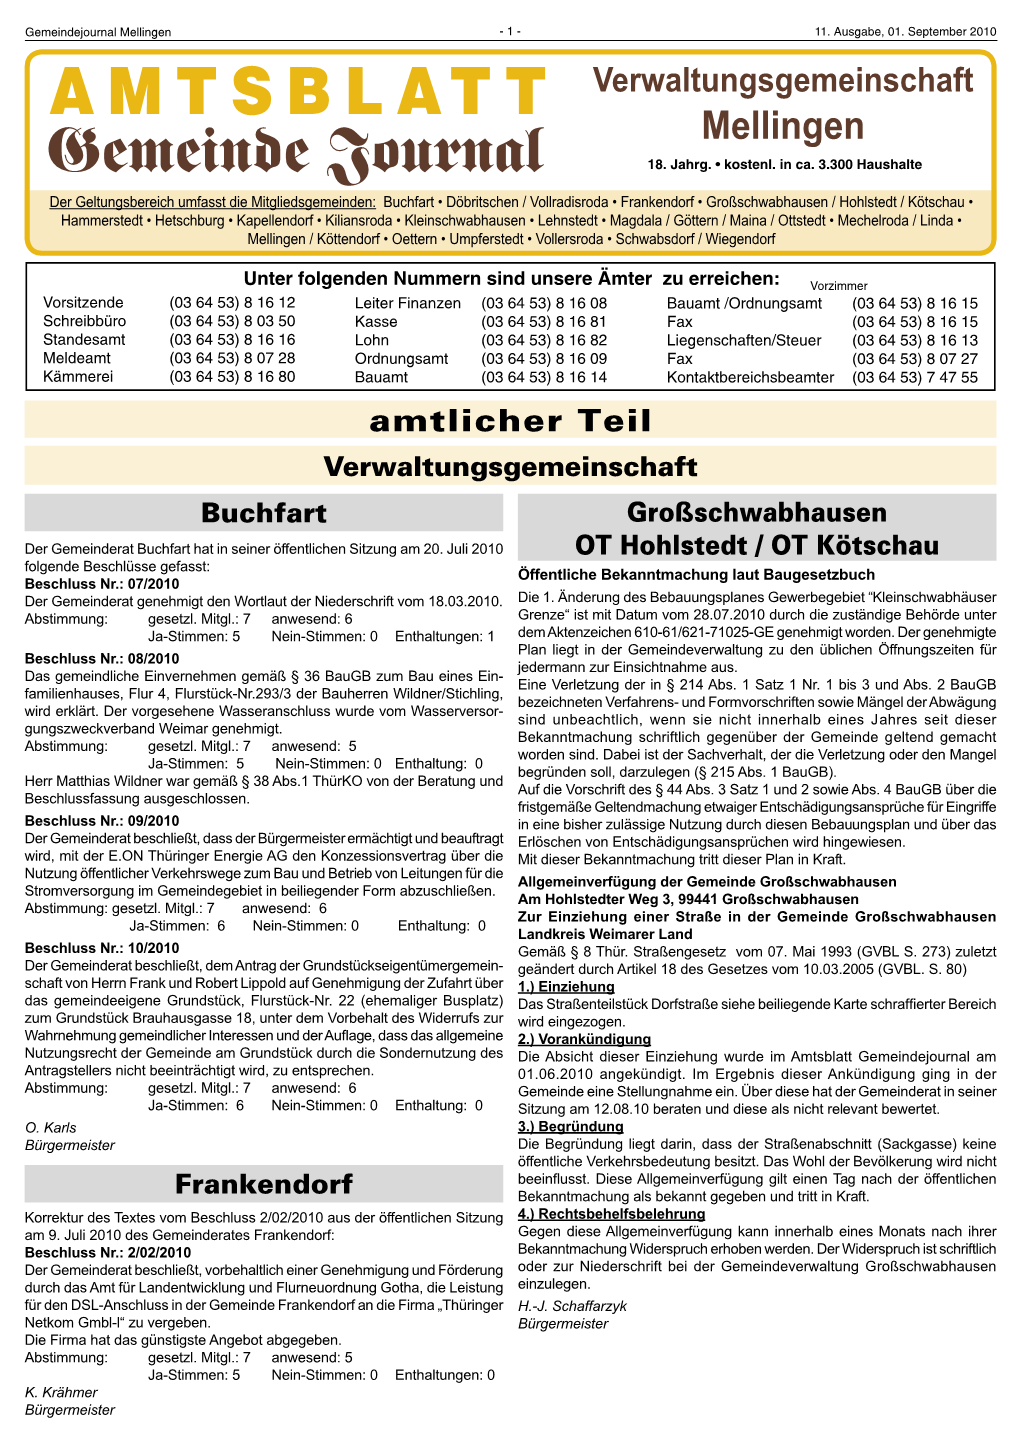 Amtsblatt 11-10.Indd